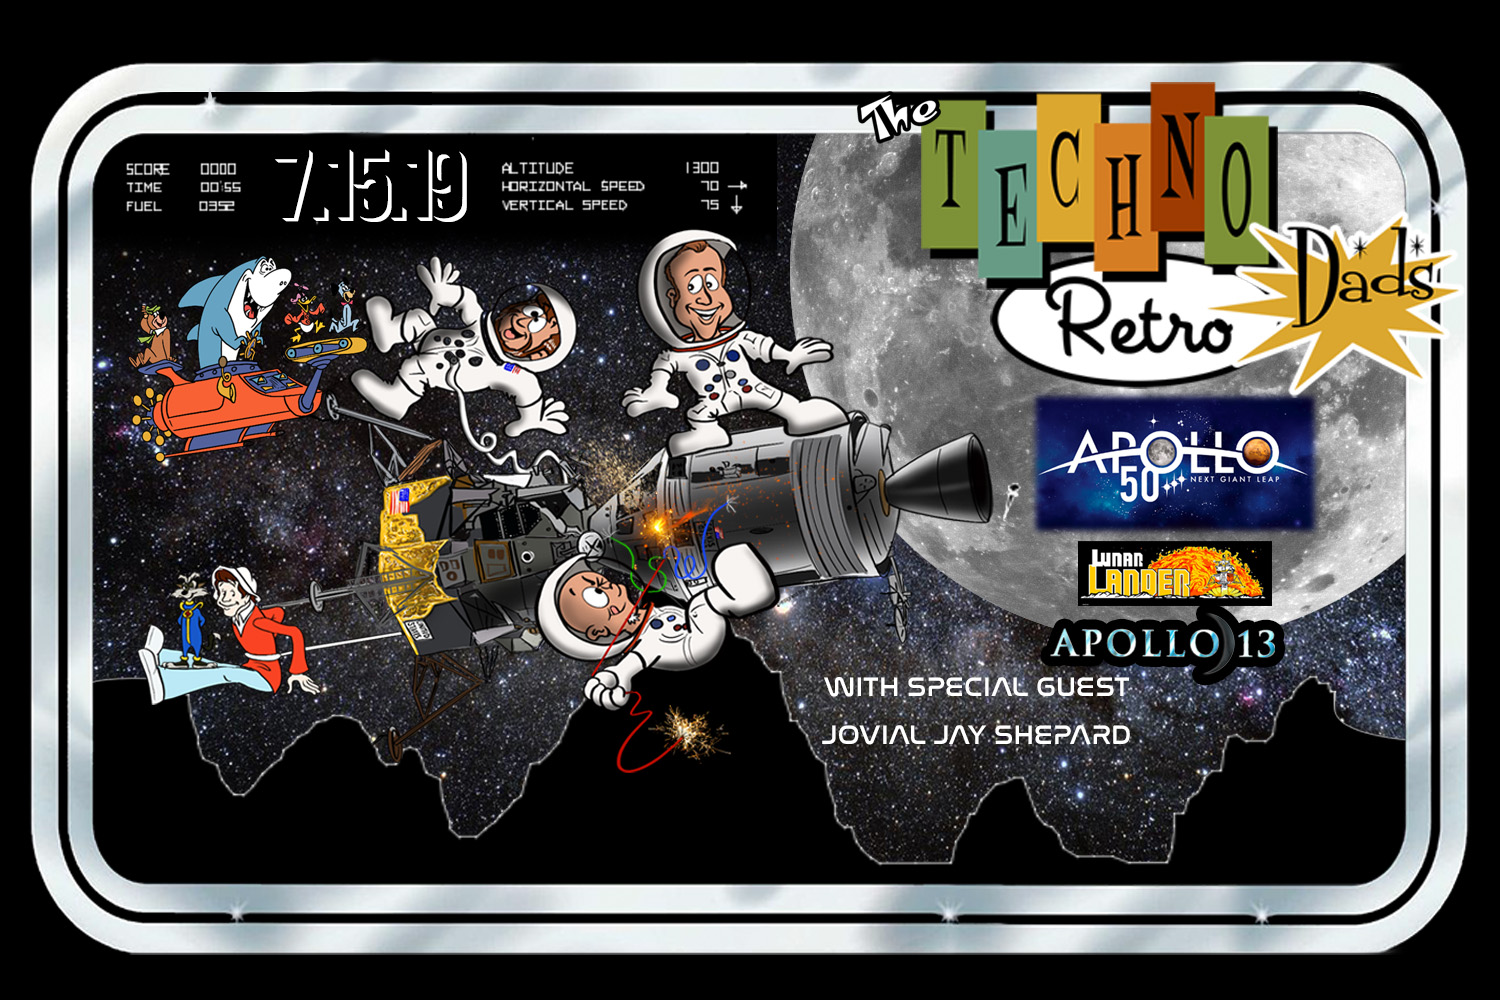 Apollo 11 Men on the Moon